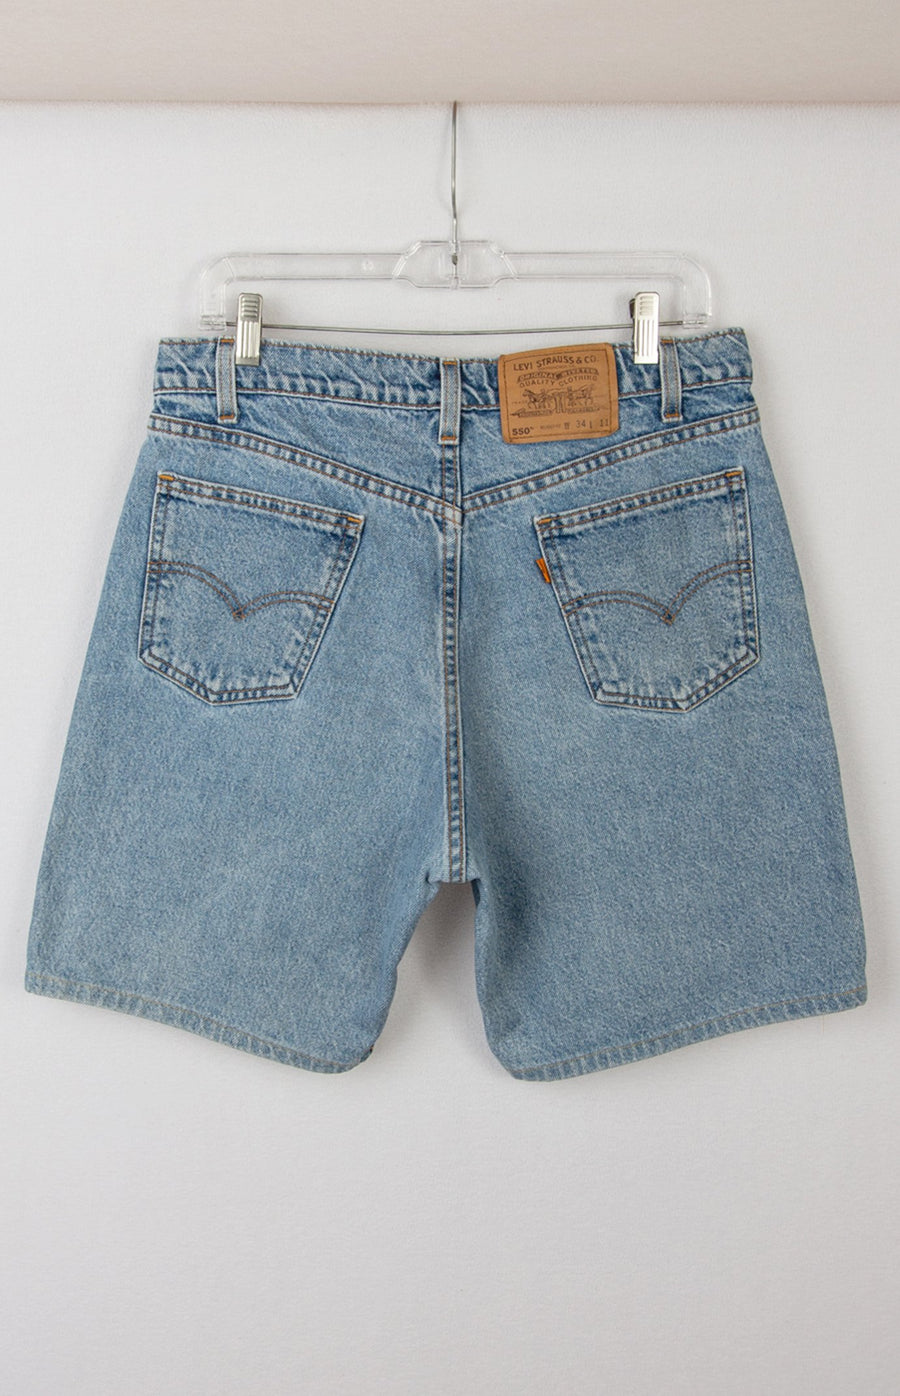 Levi's 550 Shorts | Vintage Levis Shorts | Retro Denim – GOAT Vintage